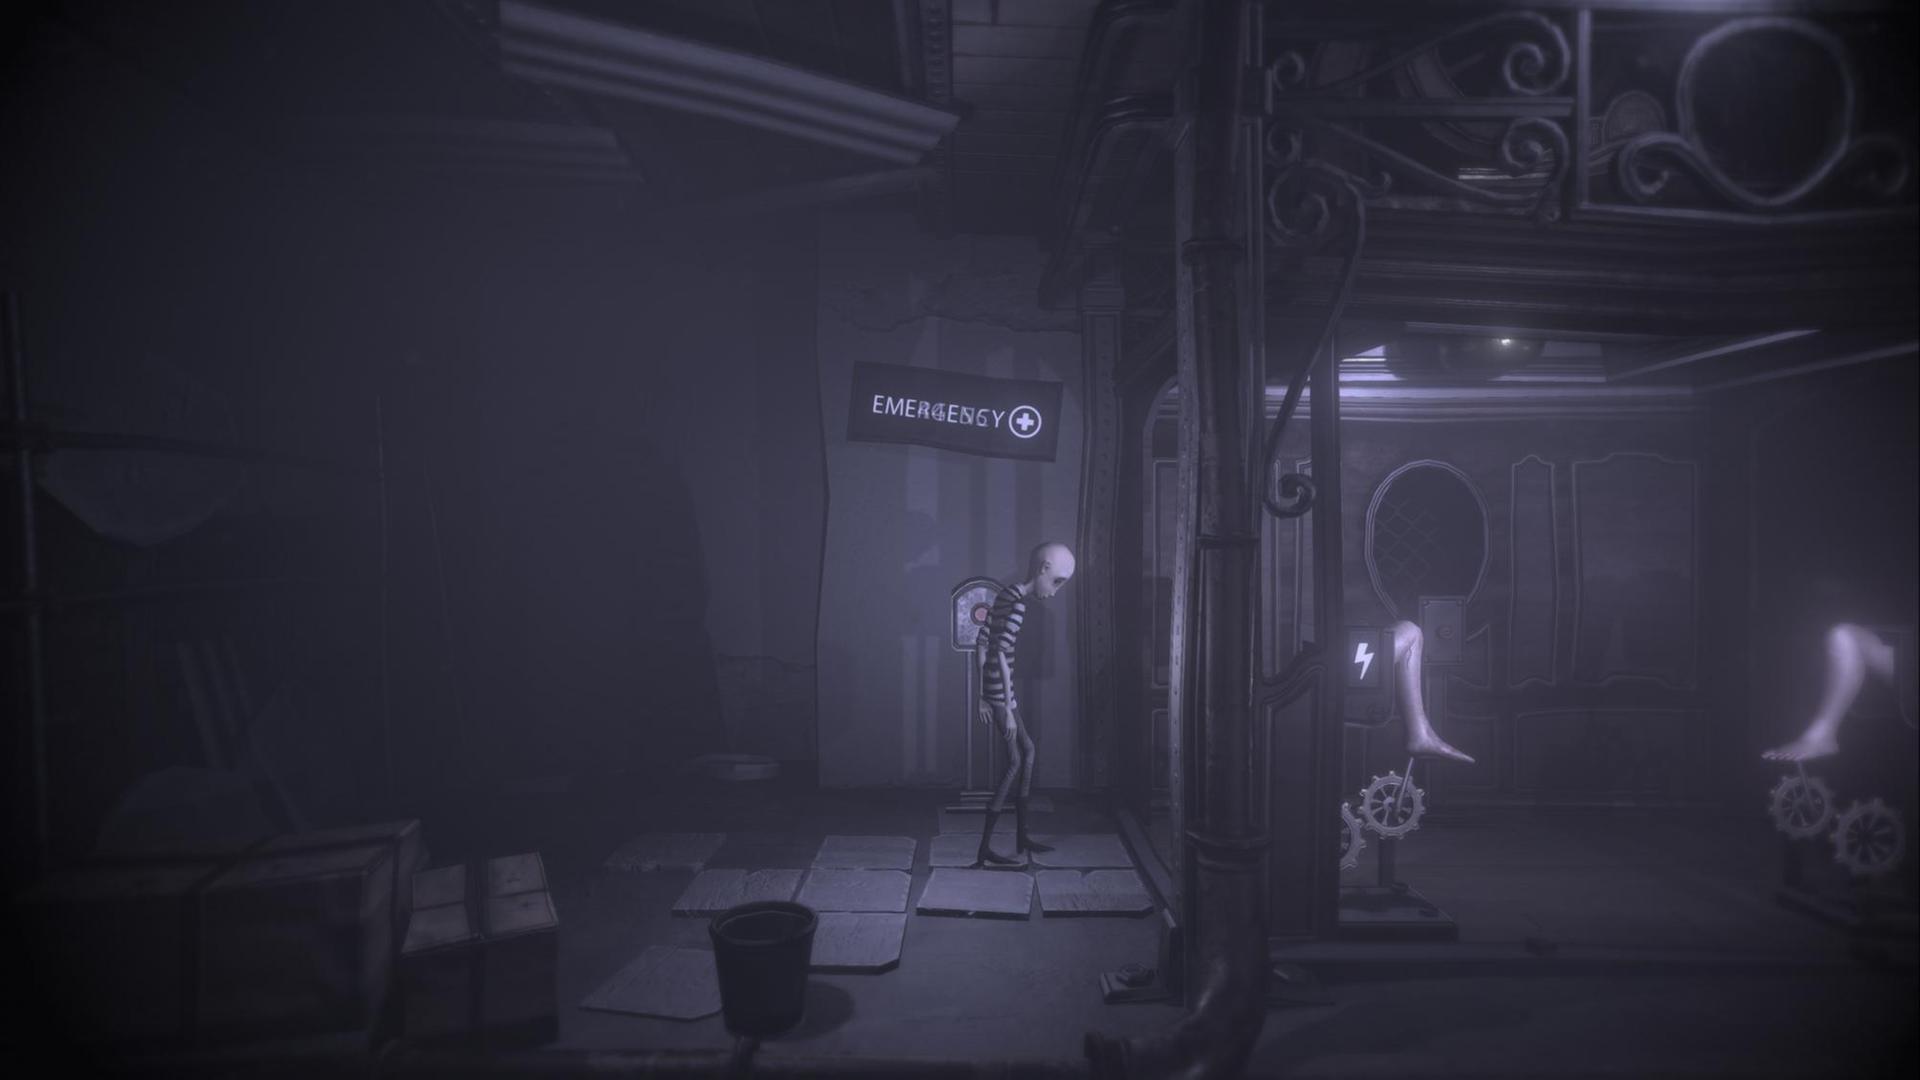 Auf dem Bild ist ein Screenshot aus dem Computerspiel "Darq" zu sehen.